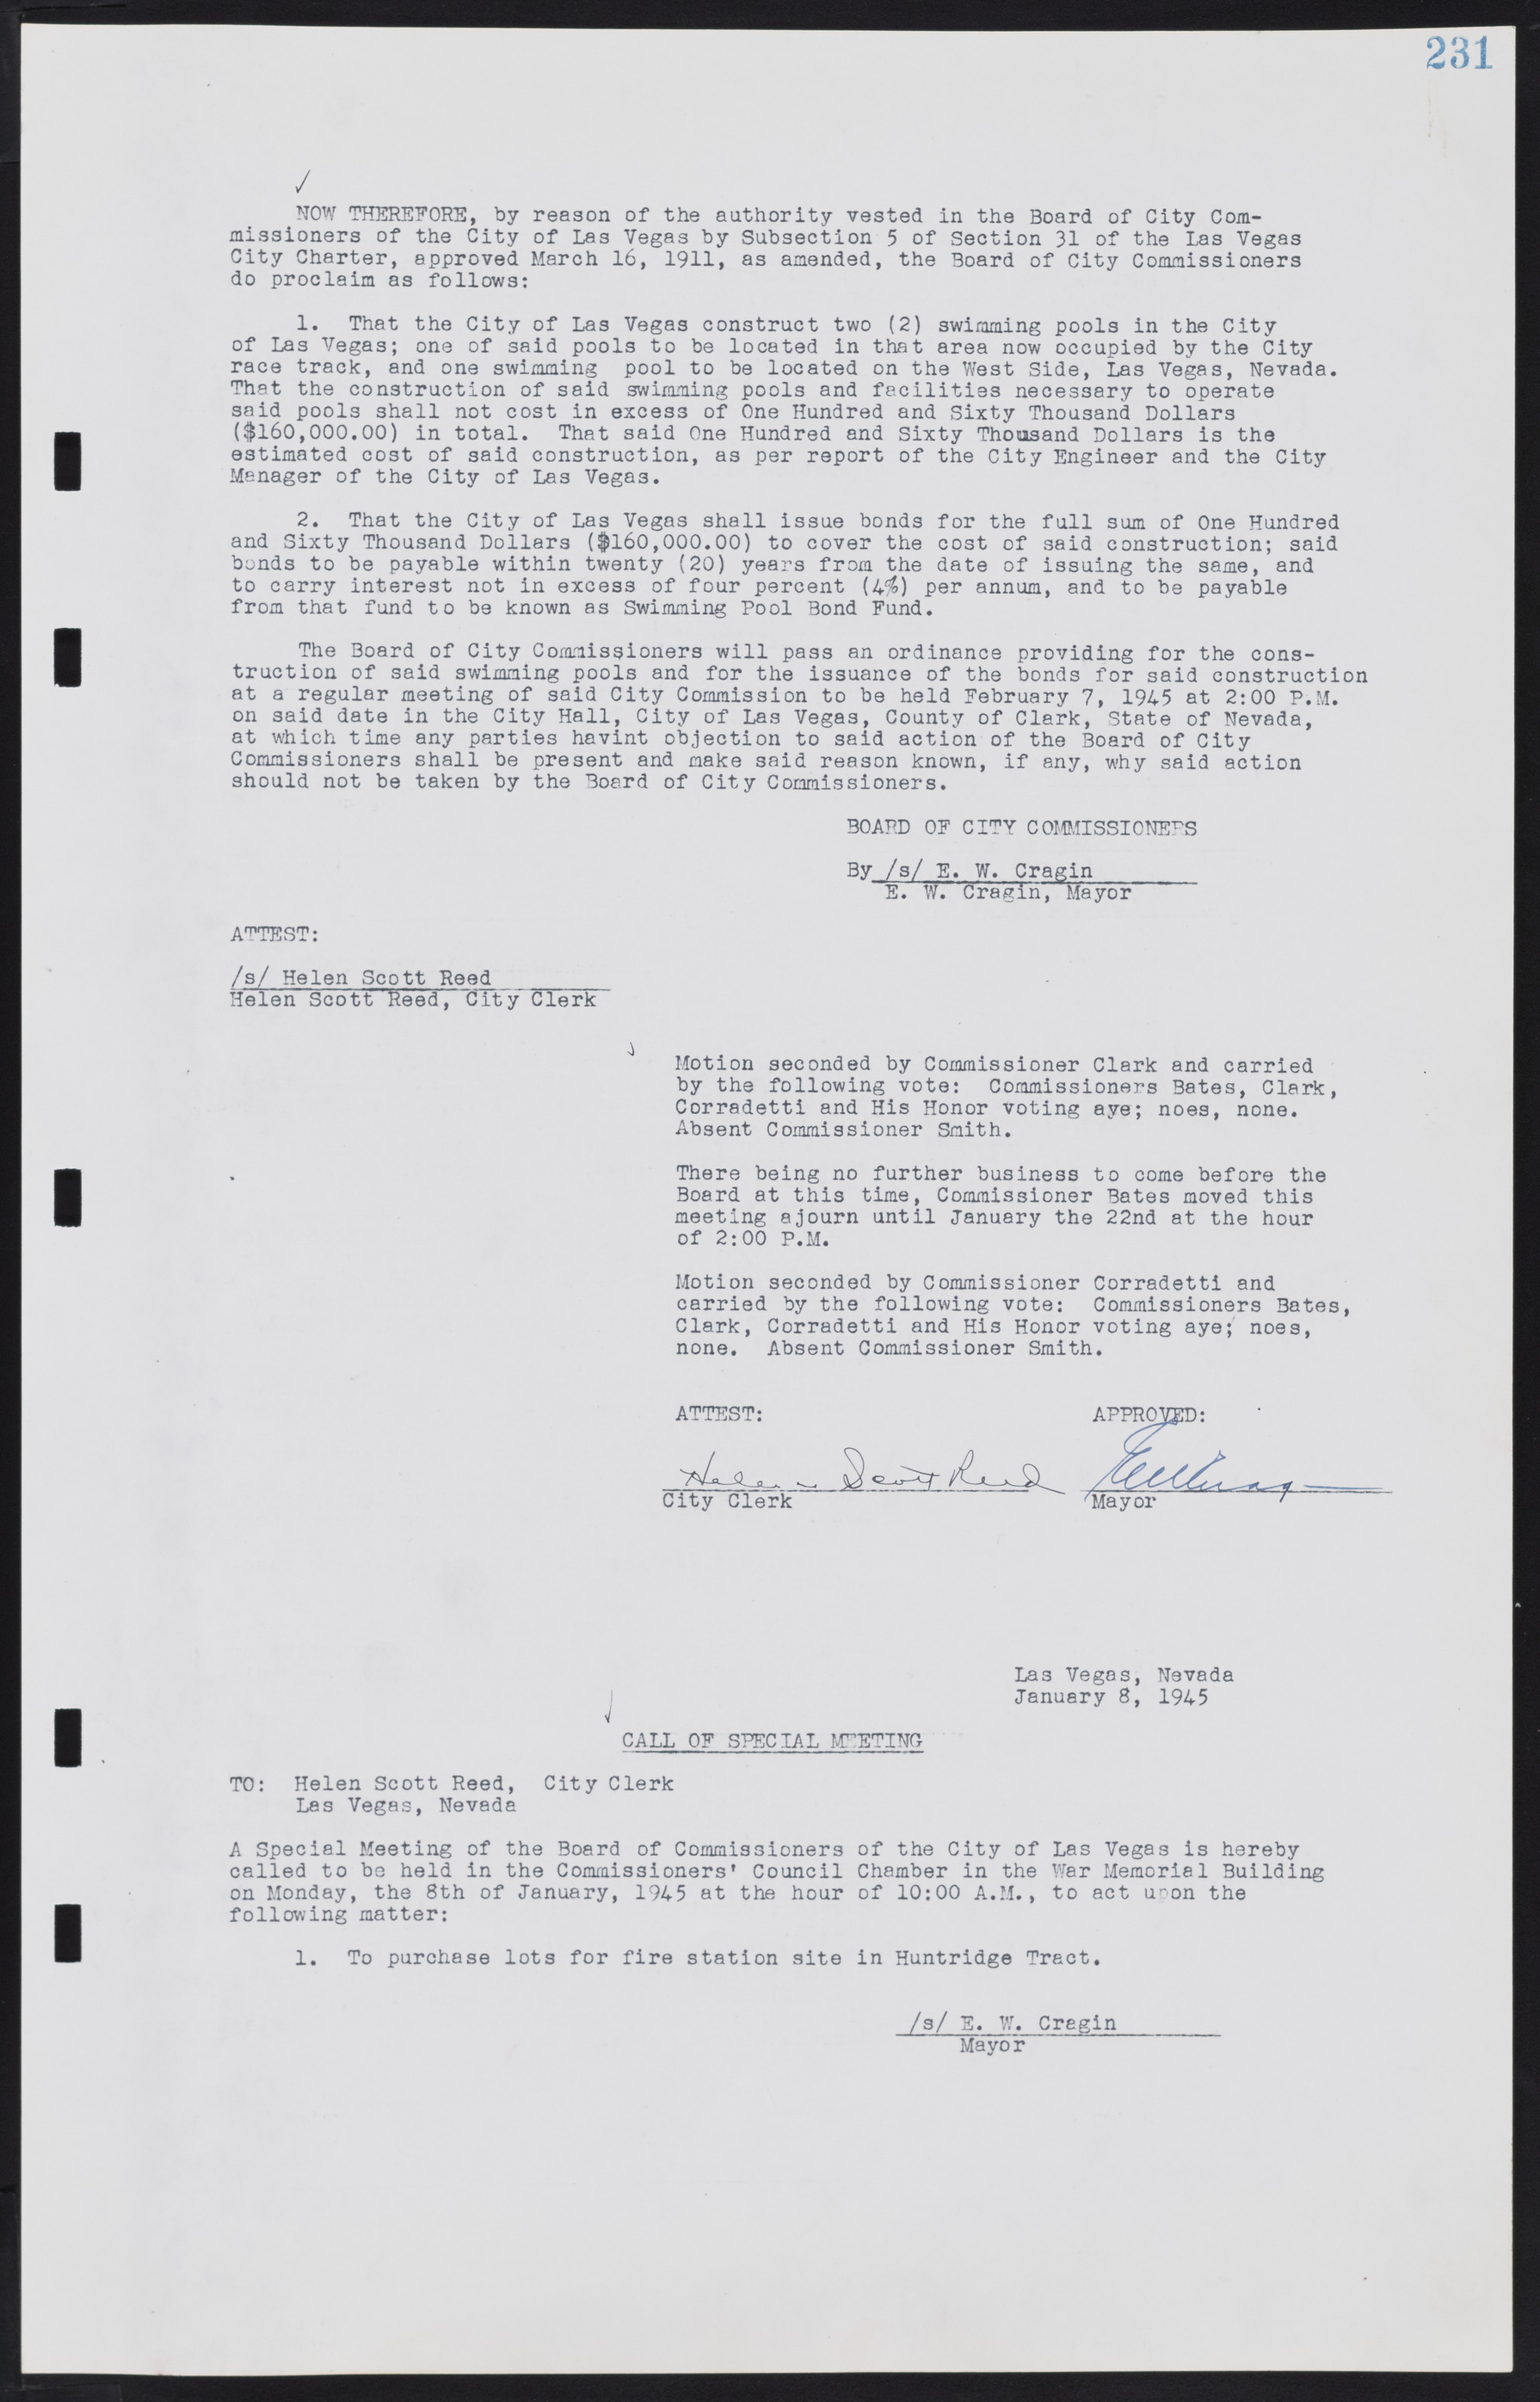 Las Vegas City Commission Minutes, August 11, 1942 to December 30, 1946, lvc000005-253